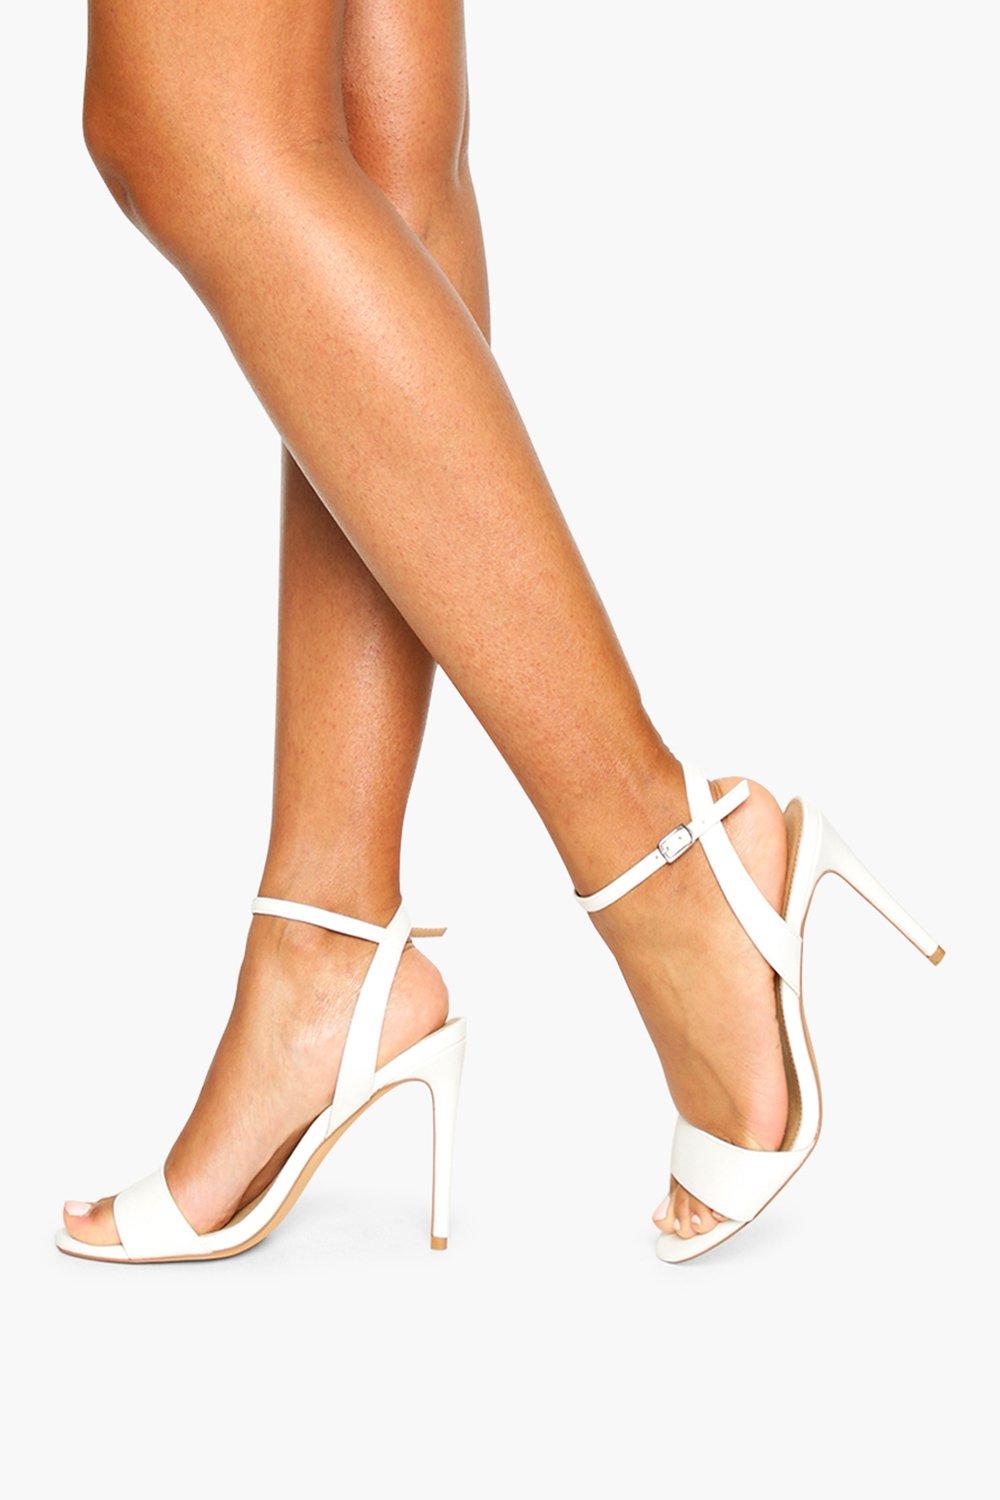 white high heels canada